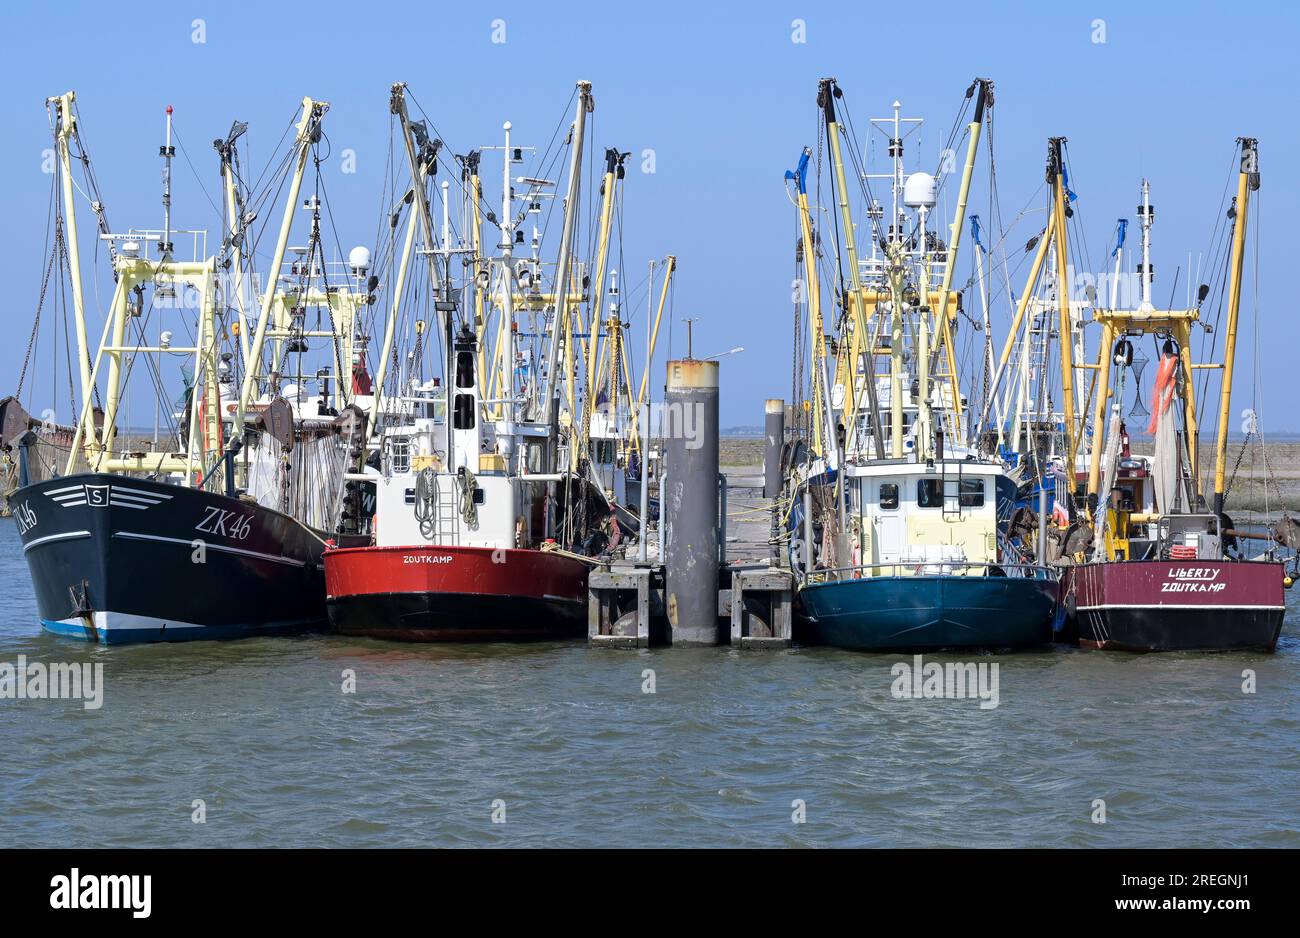 PAYS-BAS, port de Lauwersoog, bateaux de pêche au crabe dans le port / NIEDERLANDE, Lauwersoog, Krabbenfischer, Fischerboote im Hafen Banque D'Images